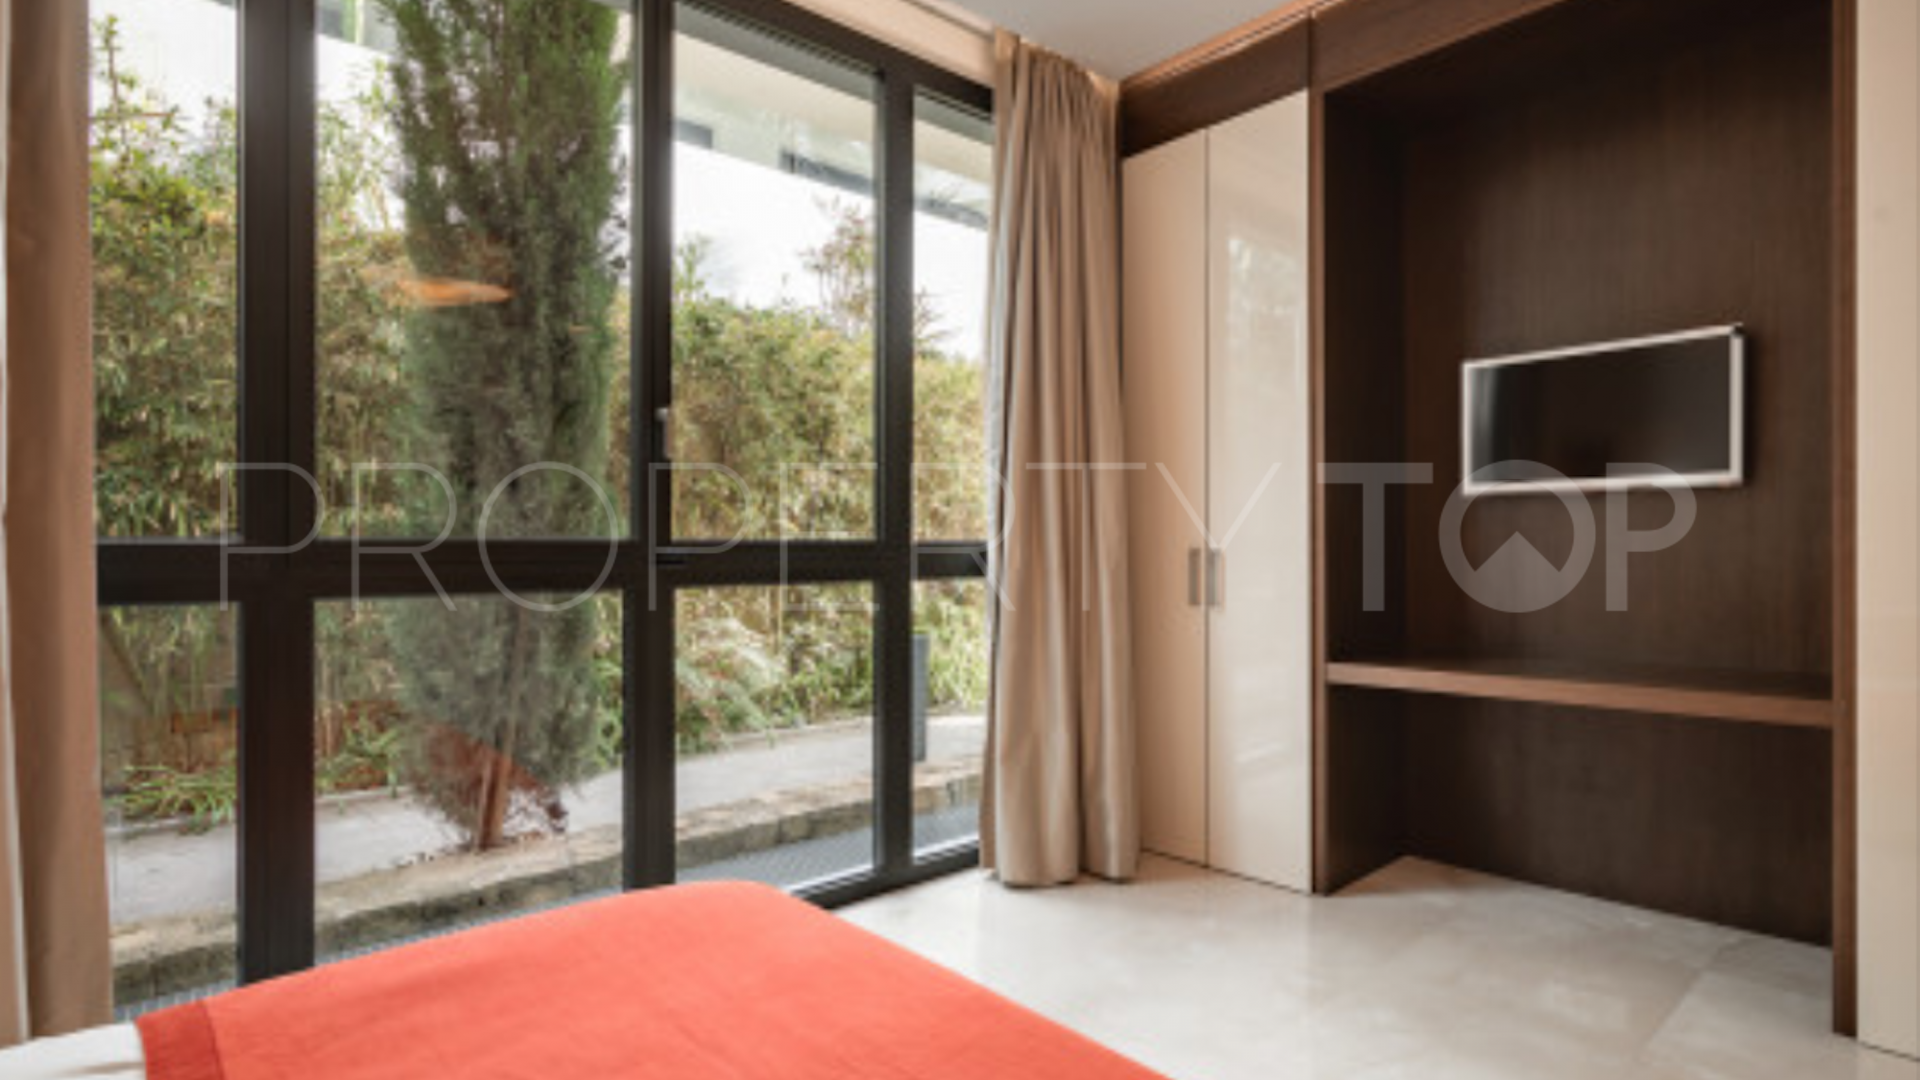 For sale ground floor duplex with 4 bedrooms in Reserva de Sierra Blanca